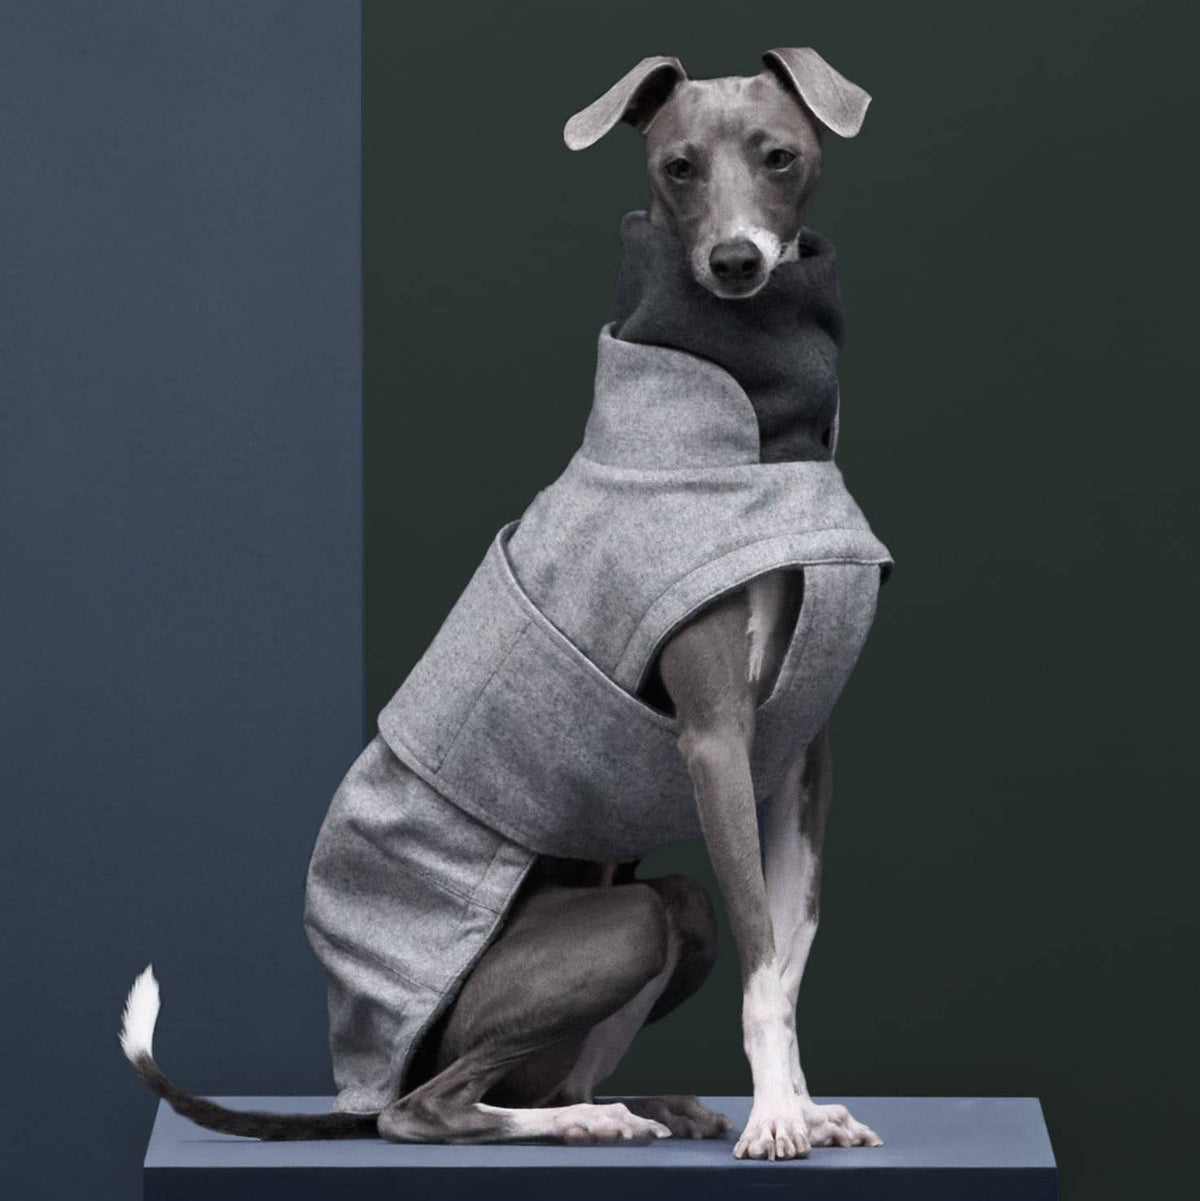 Flannel Grey - Italian Greyhound special